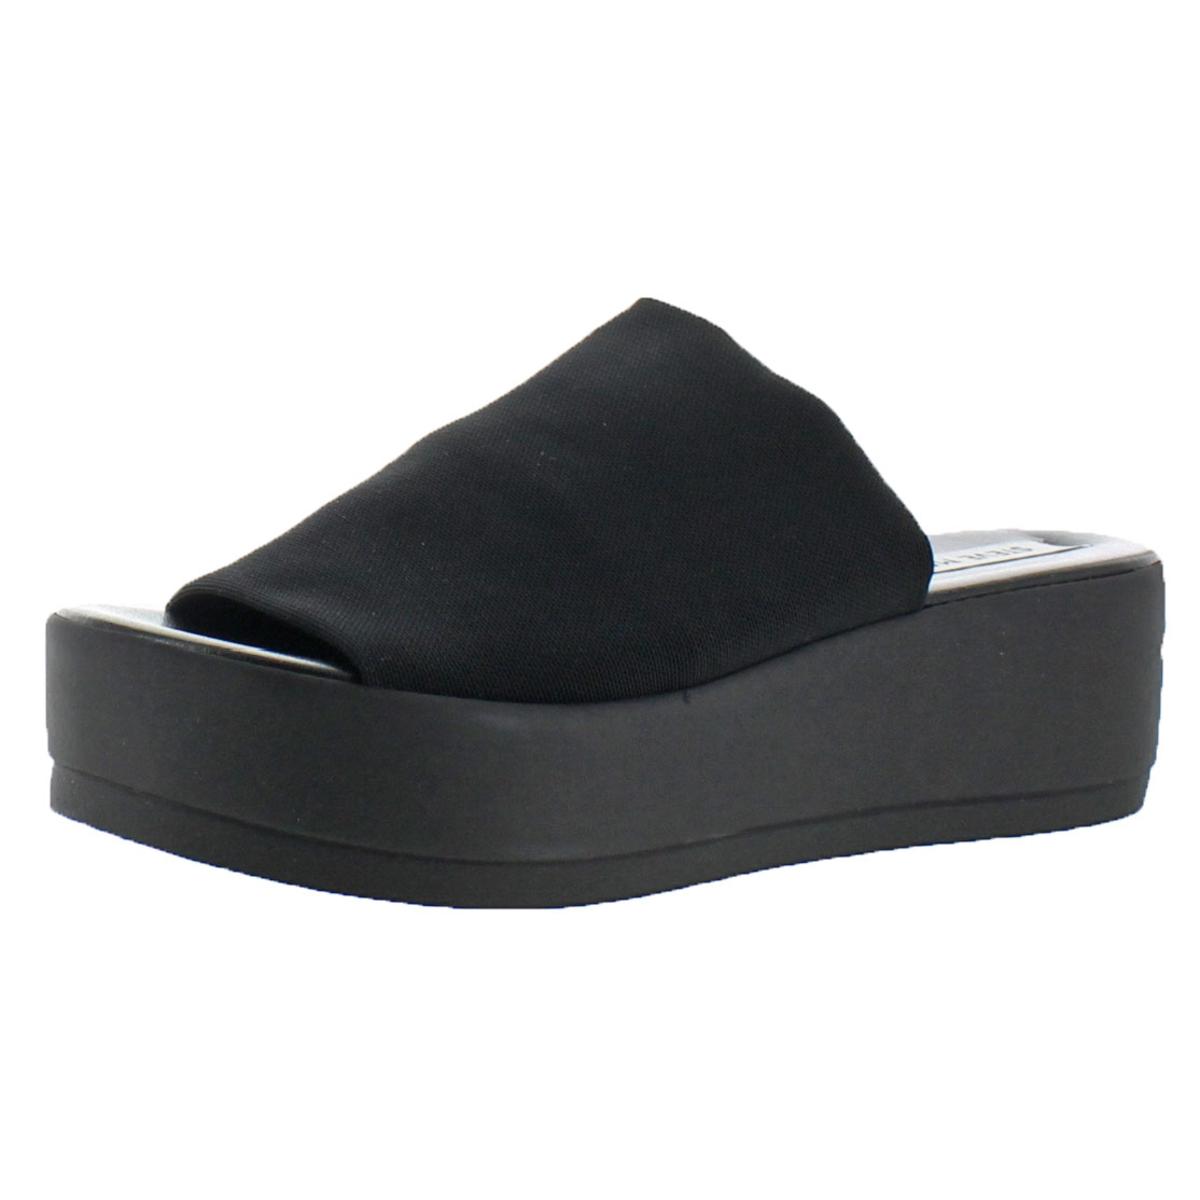 black platform sandals ebay